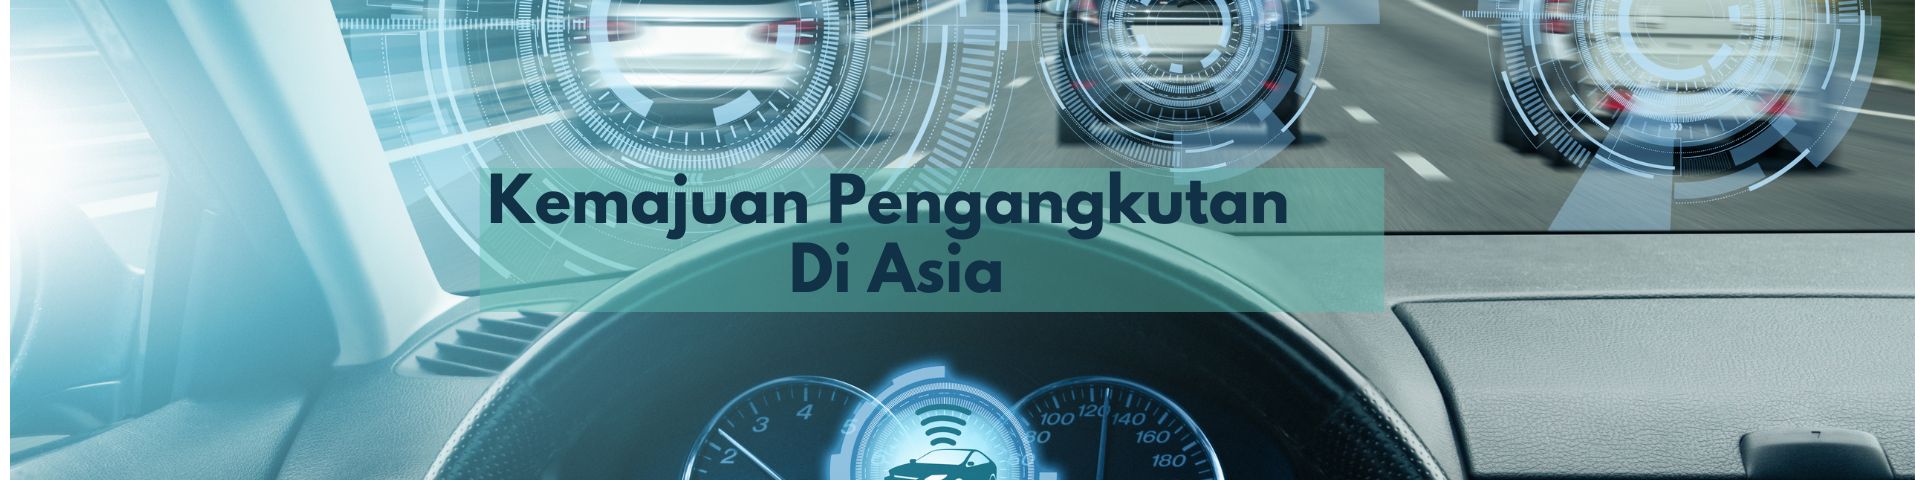 Akronim & Teknik: Kemajuan Pengangkutan di Asia